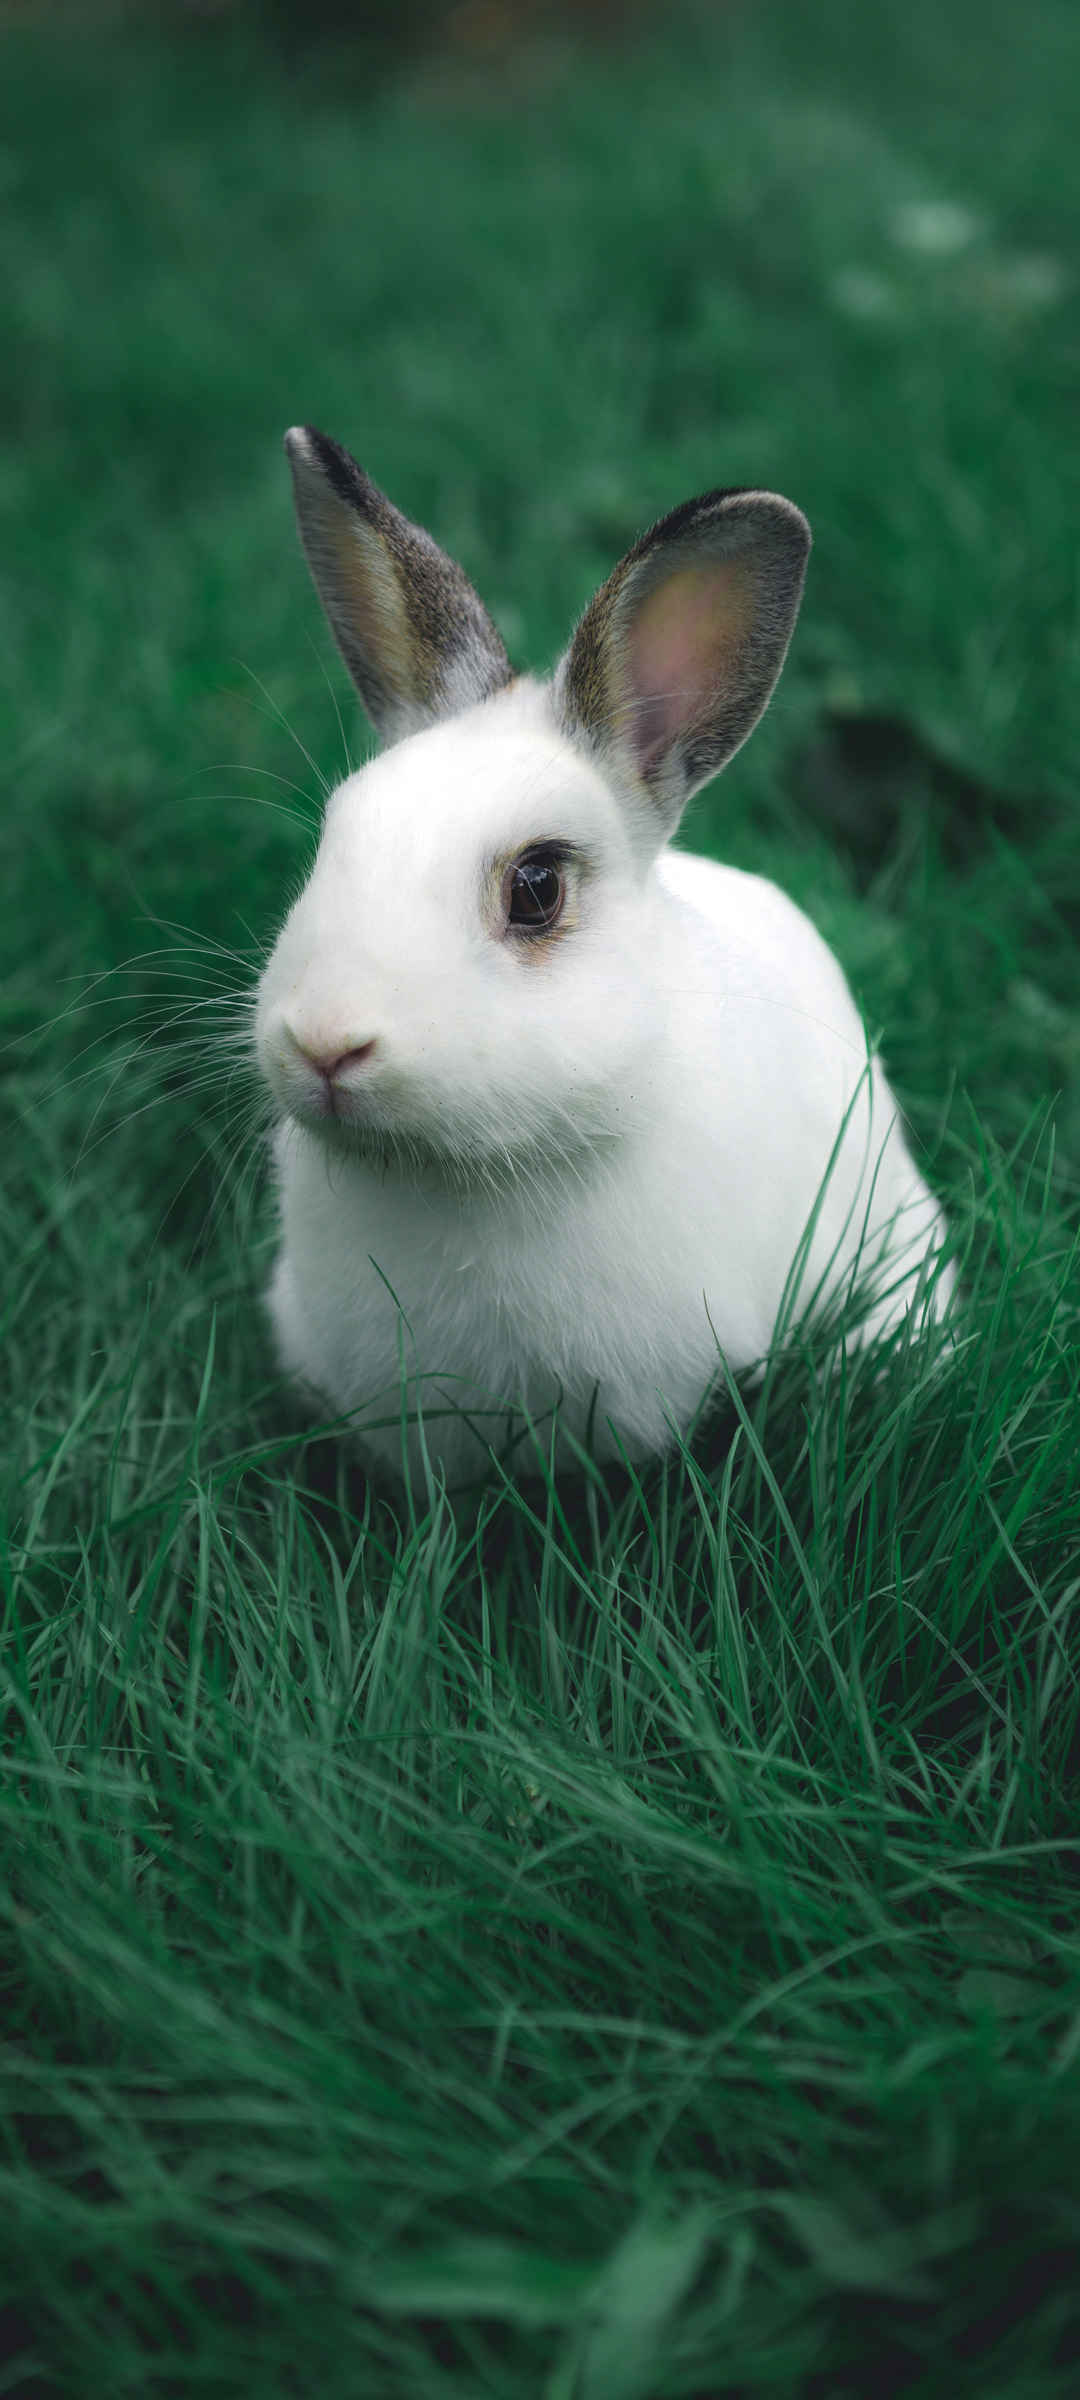 可爱小白兔子动物壁纸呆萌-